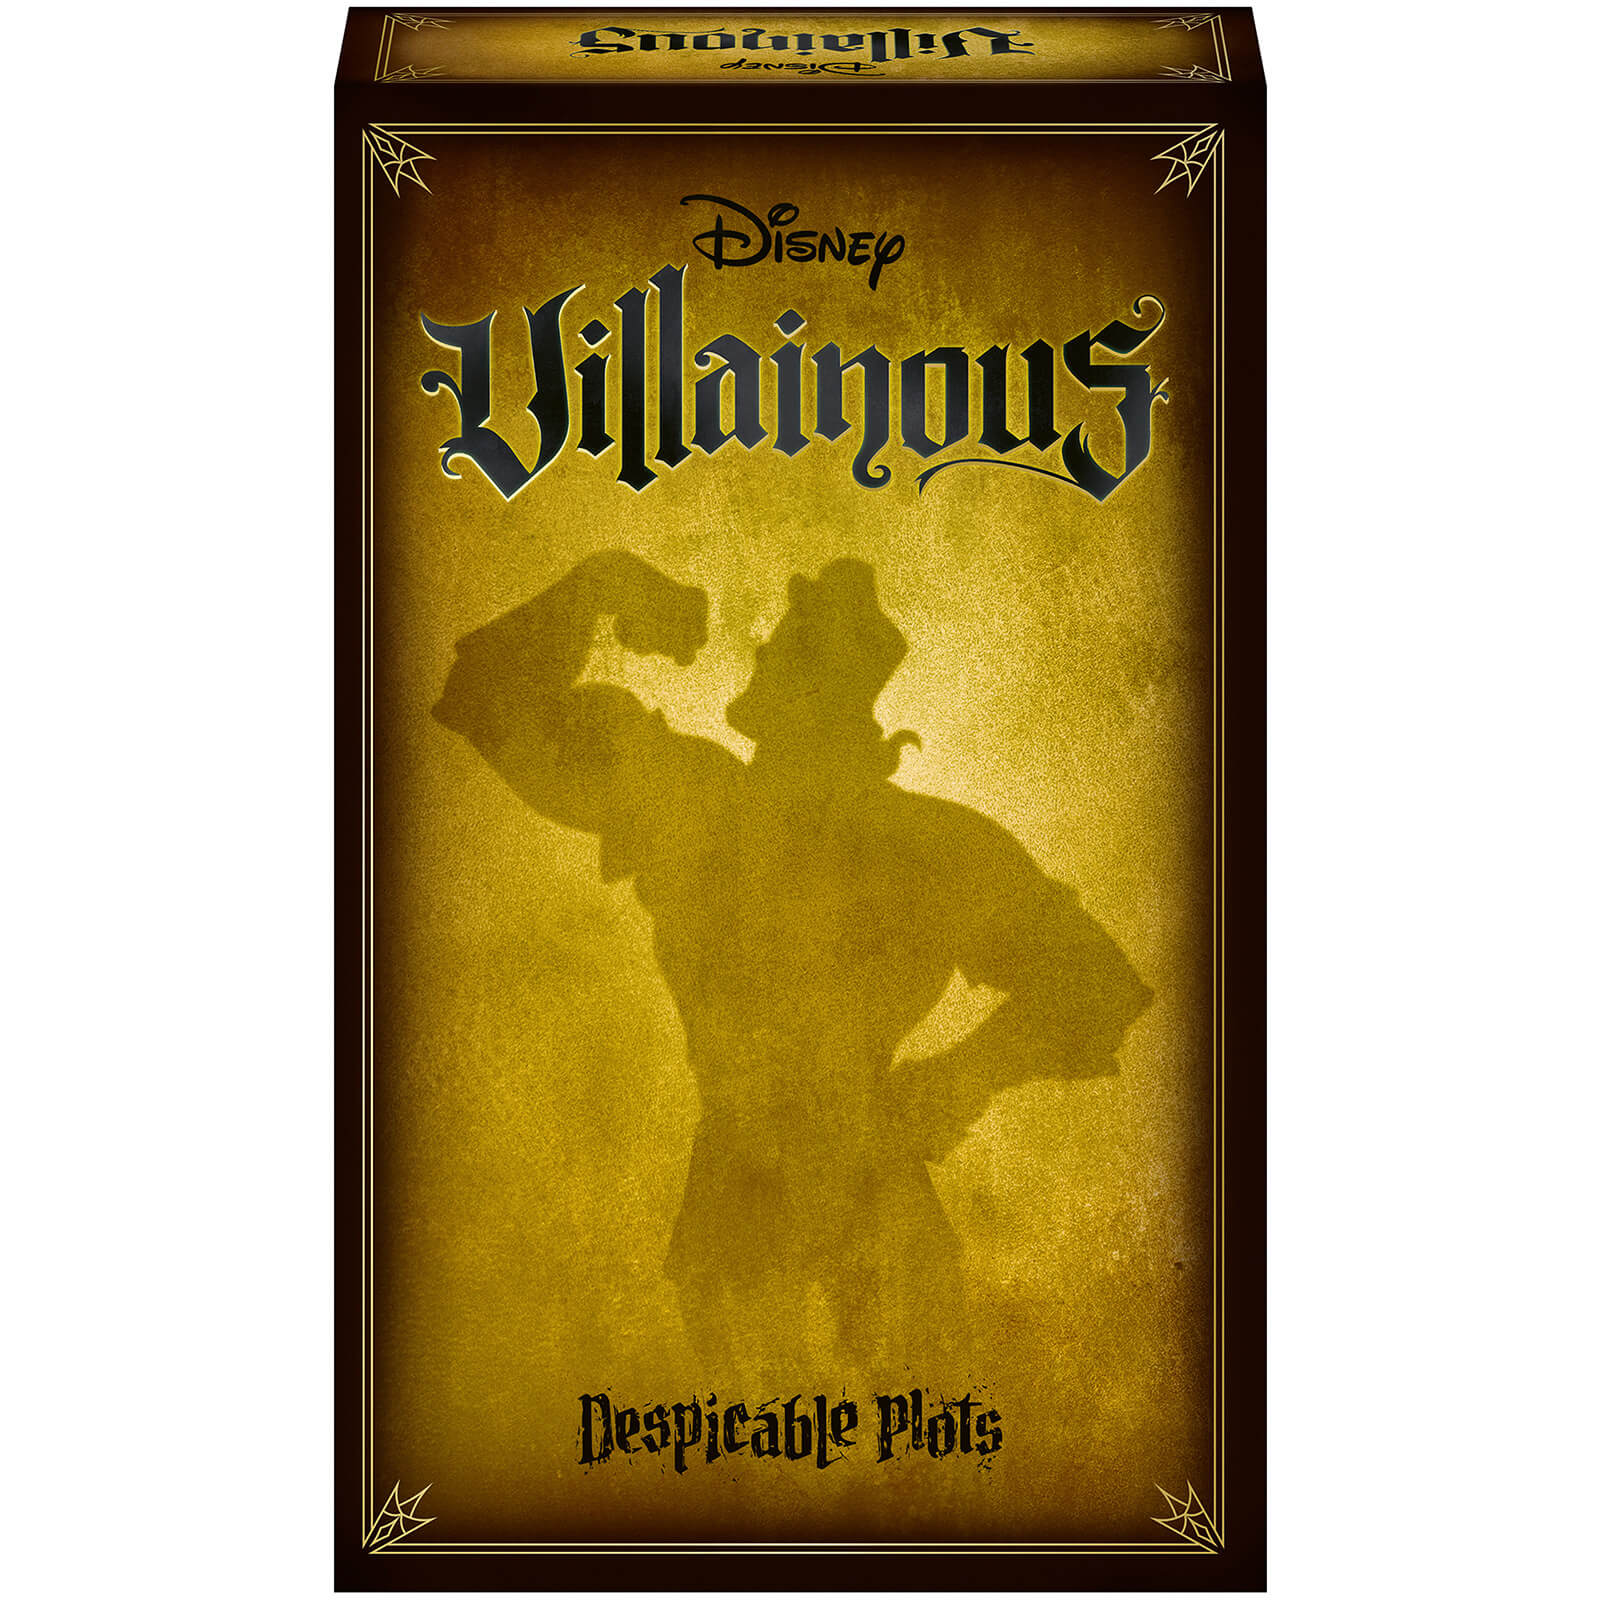 Ravensburger Disney Villainous Game - Despicable Plots - Standalone/Expansion Pack